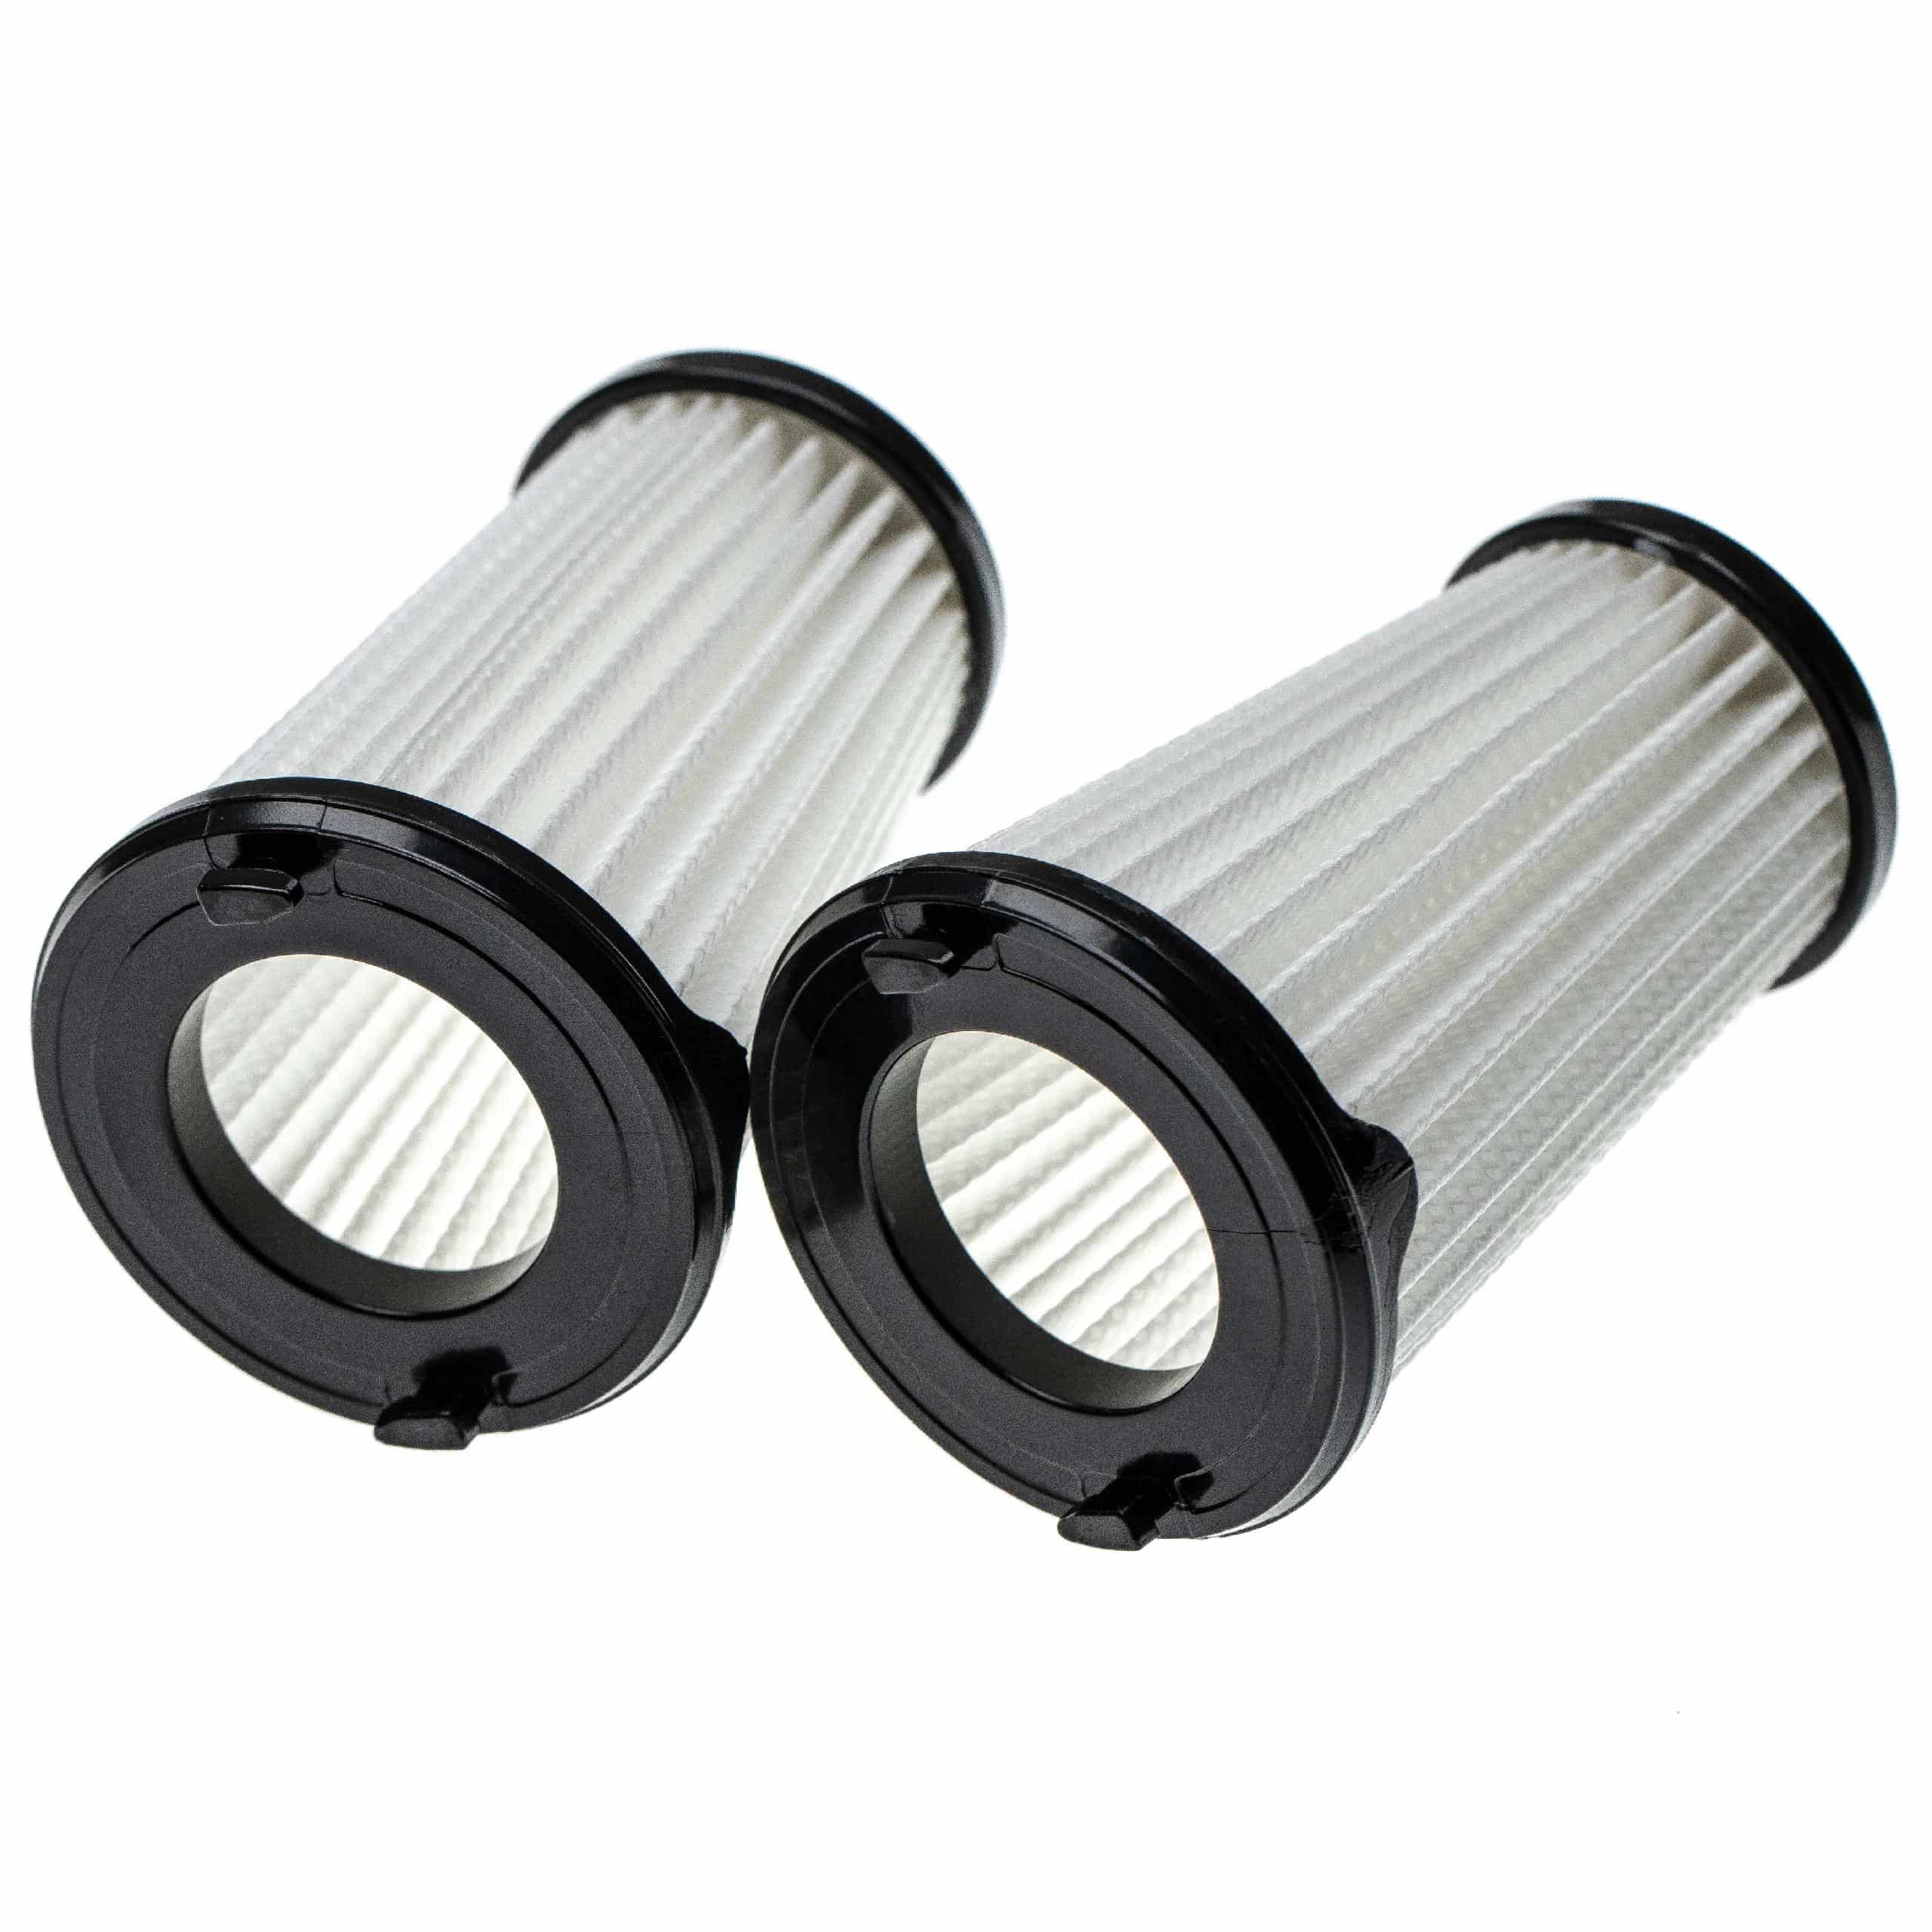 6x Filtr do odkurzacza Electrolux zamiennik AEG 9001683755, 90094073100 - filtr lamelowy, czarny / biały